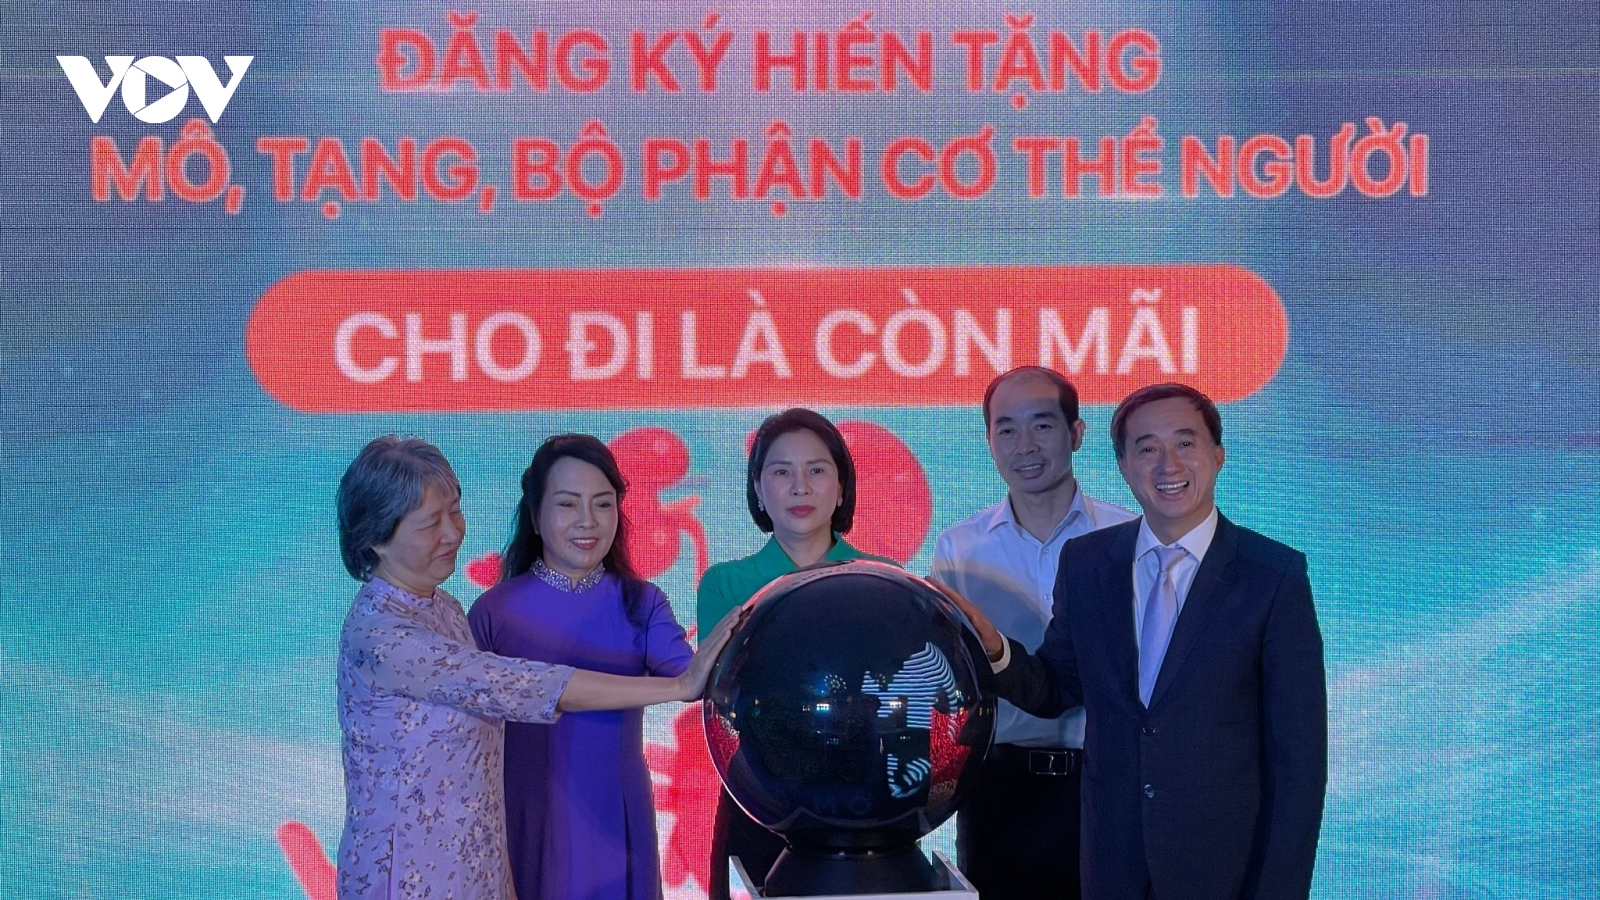 Thành lập chi hội vận động hiến mô tạng đầu tiên của Hà Nội